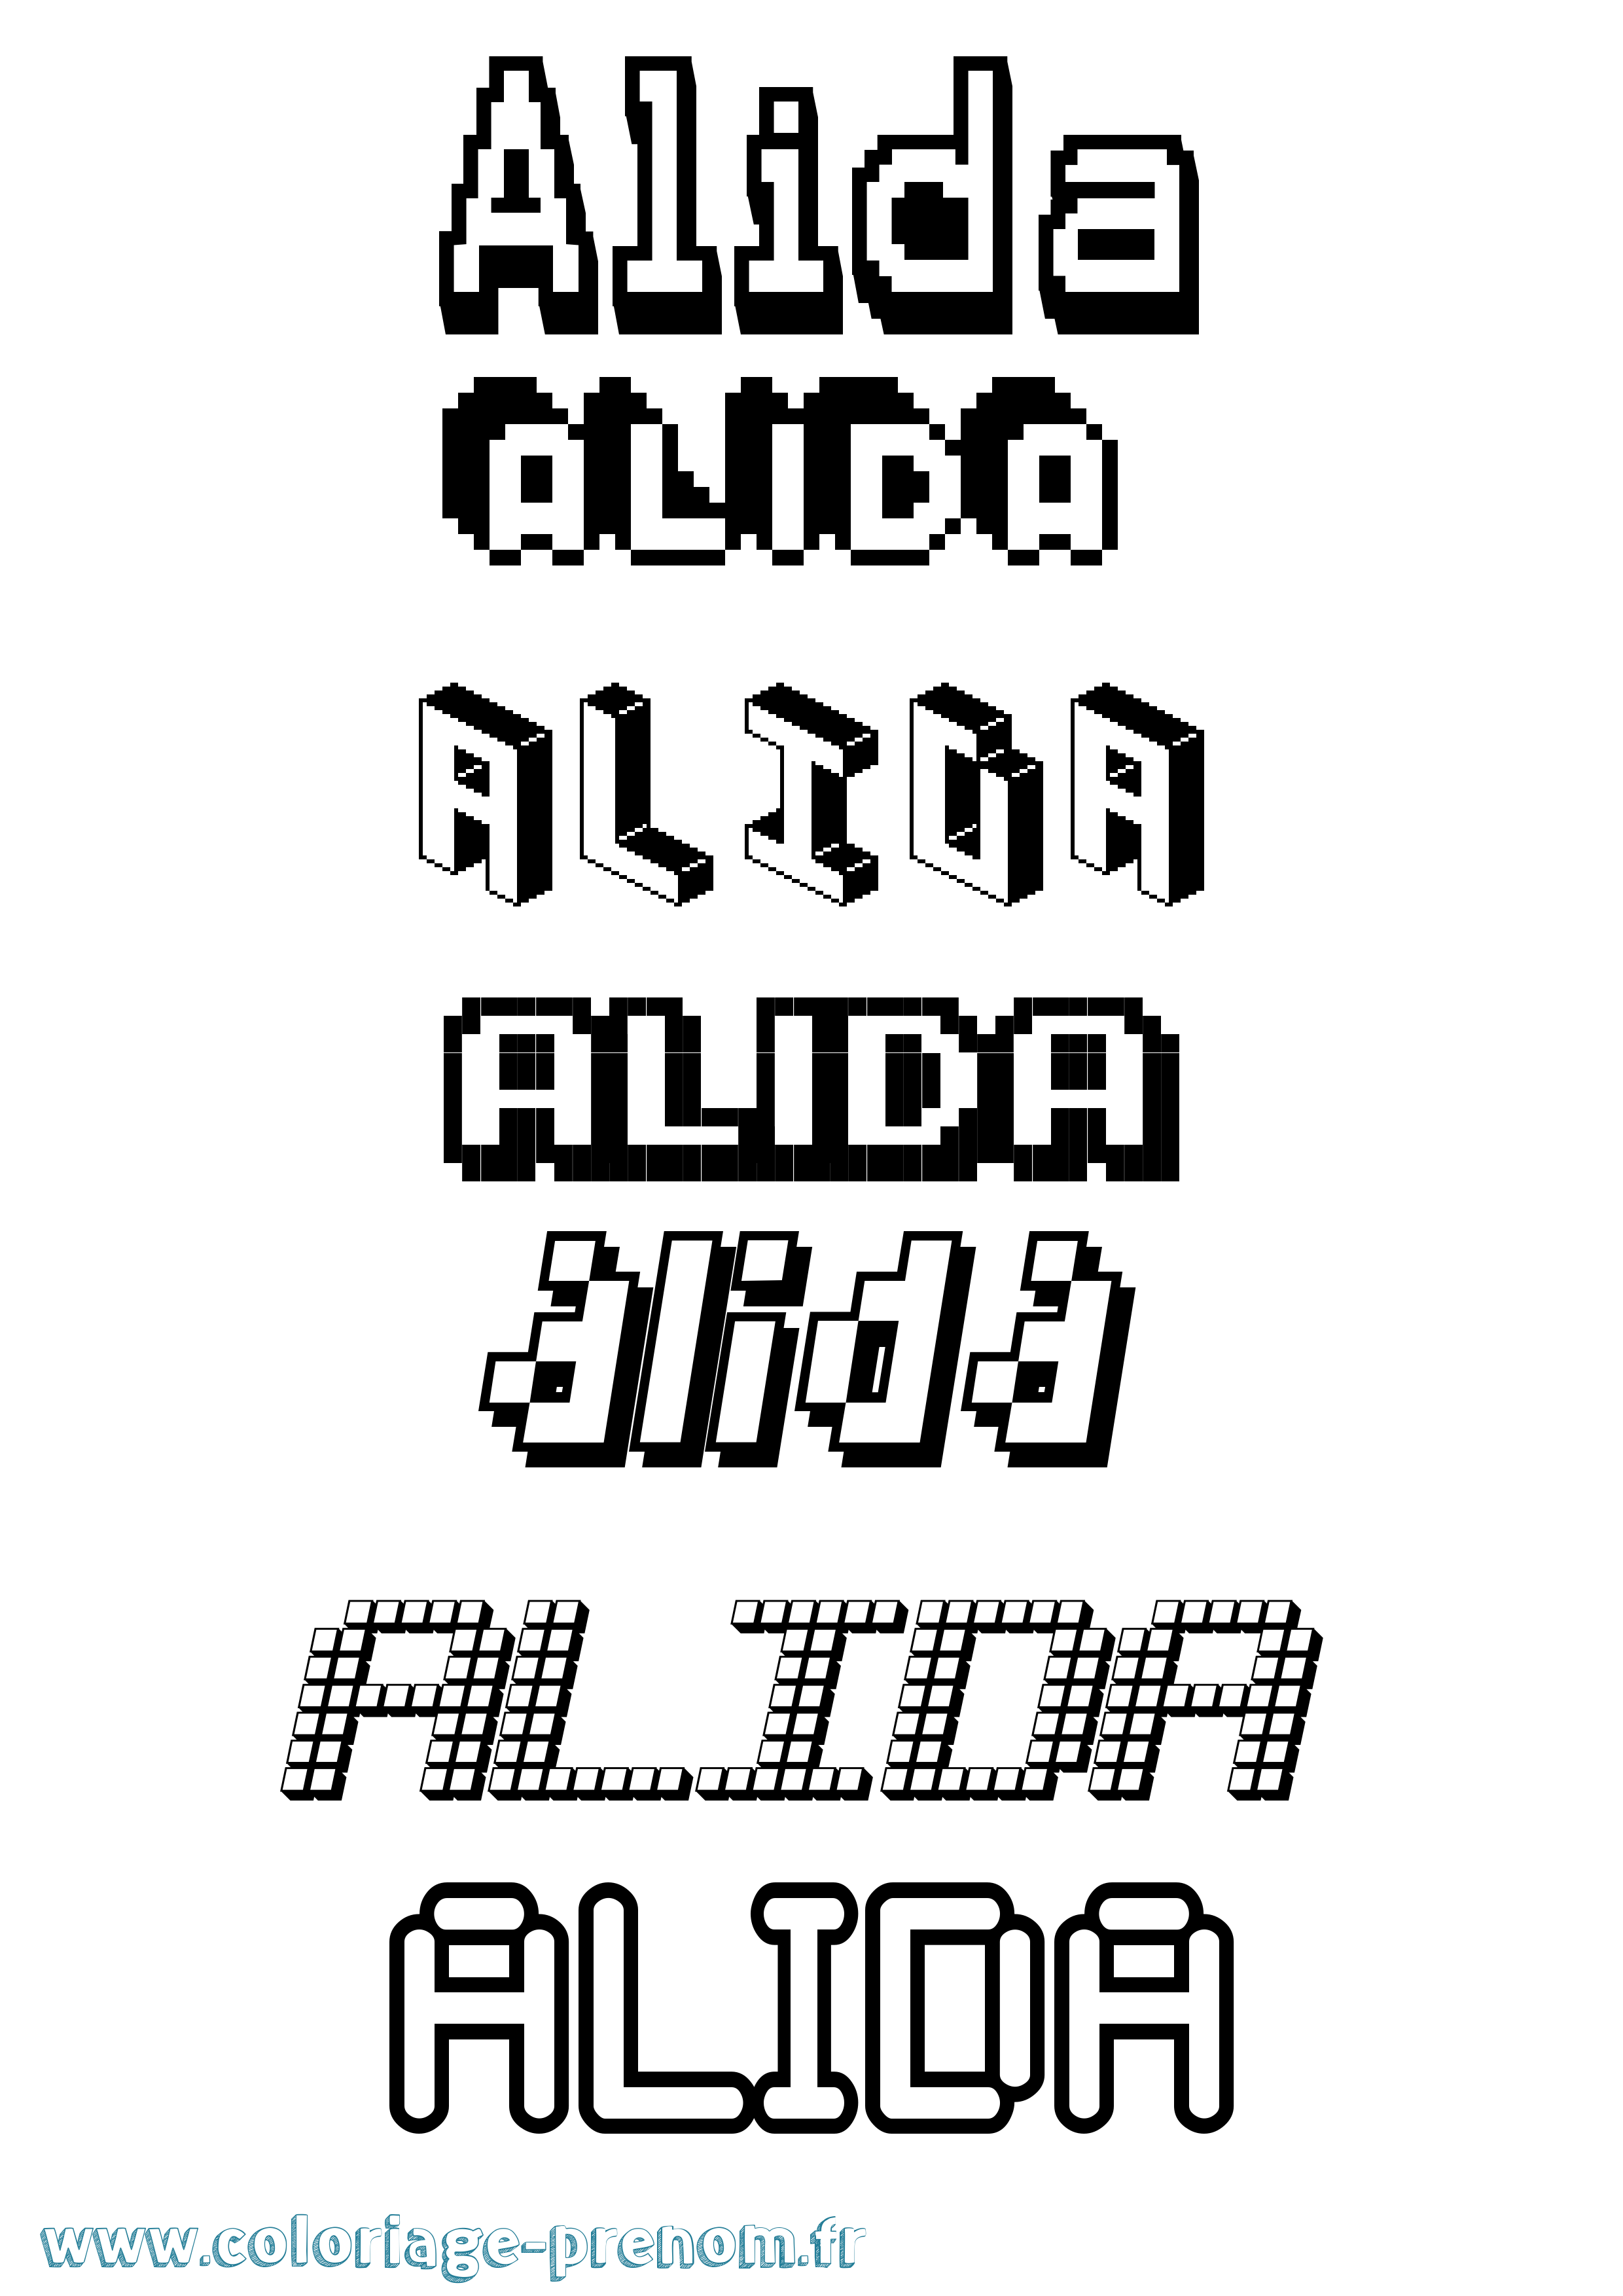 Coloriage prénom Alida Pixel